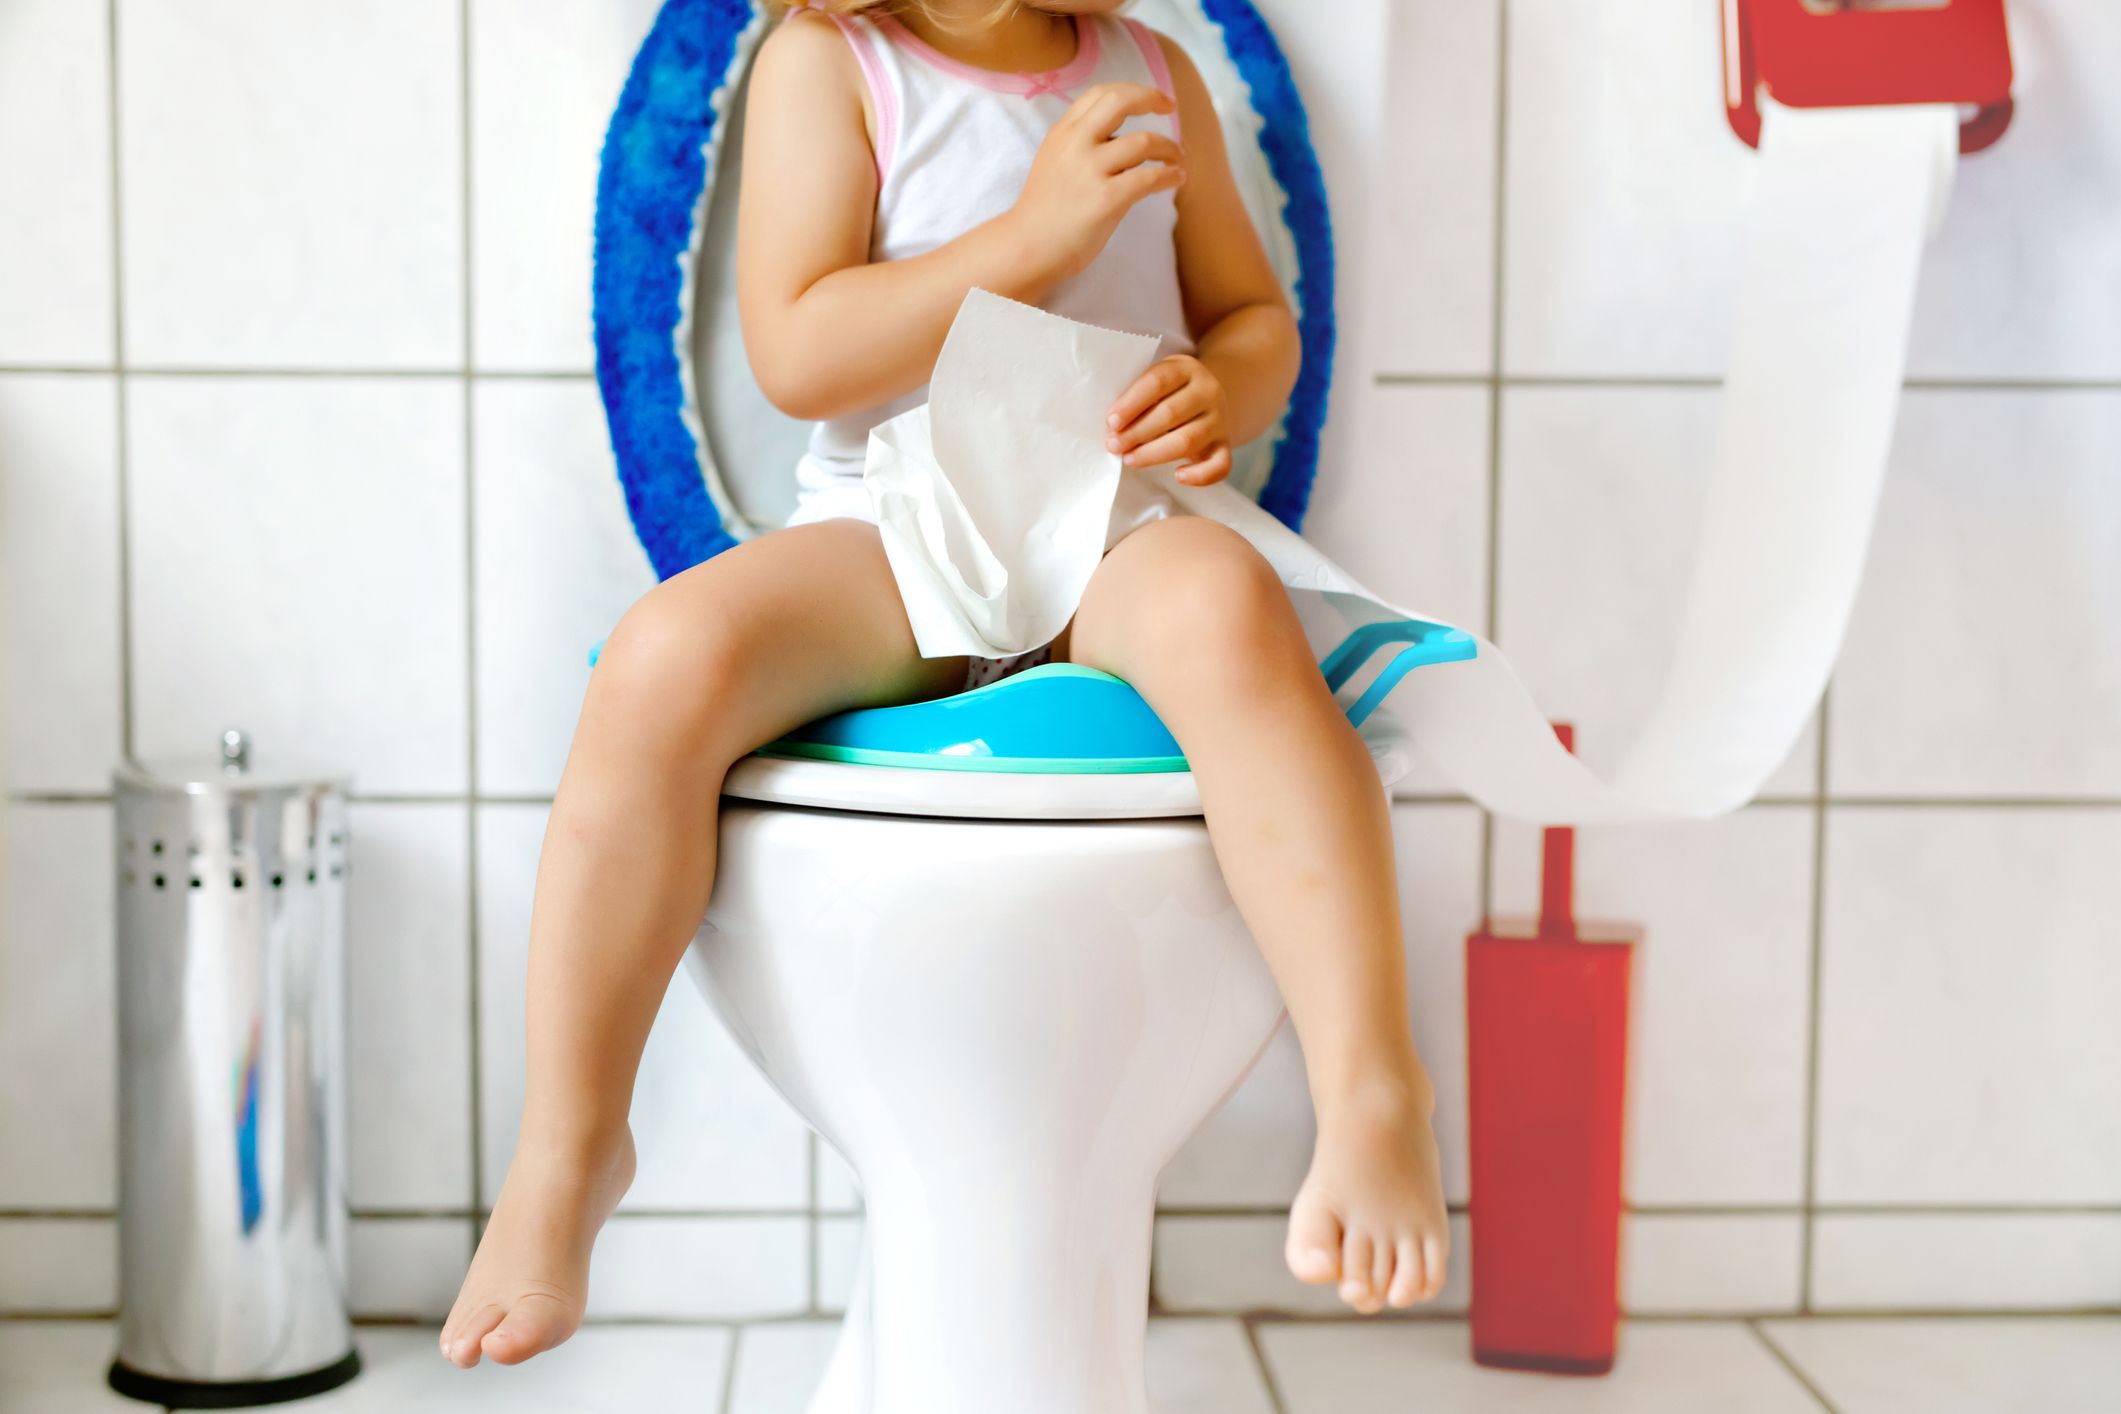 Toilette Pot WC Bebe Enfant Bébé de Siege Reducteur Rehausseur